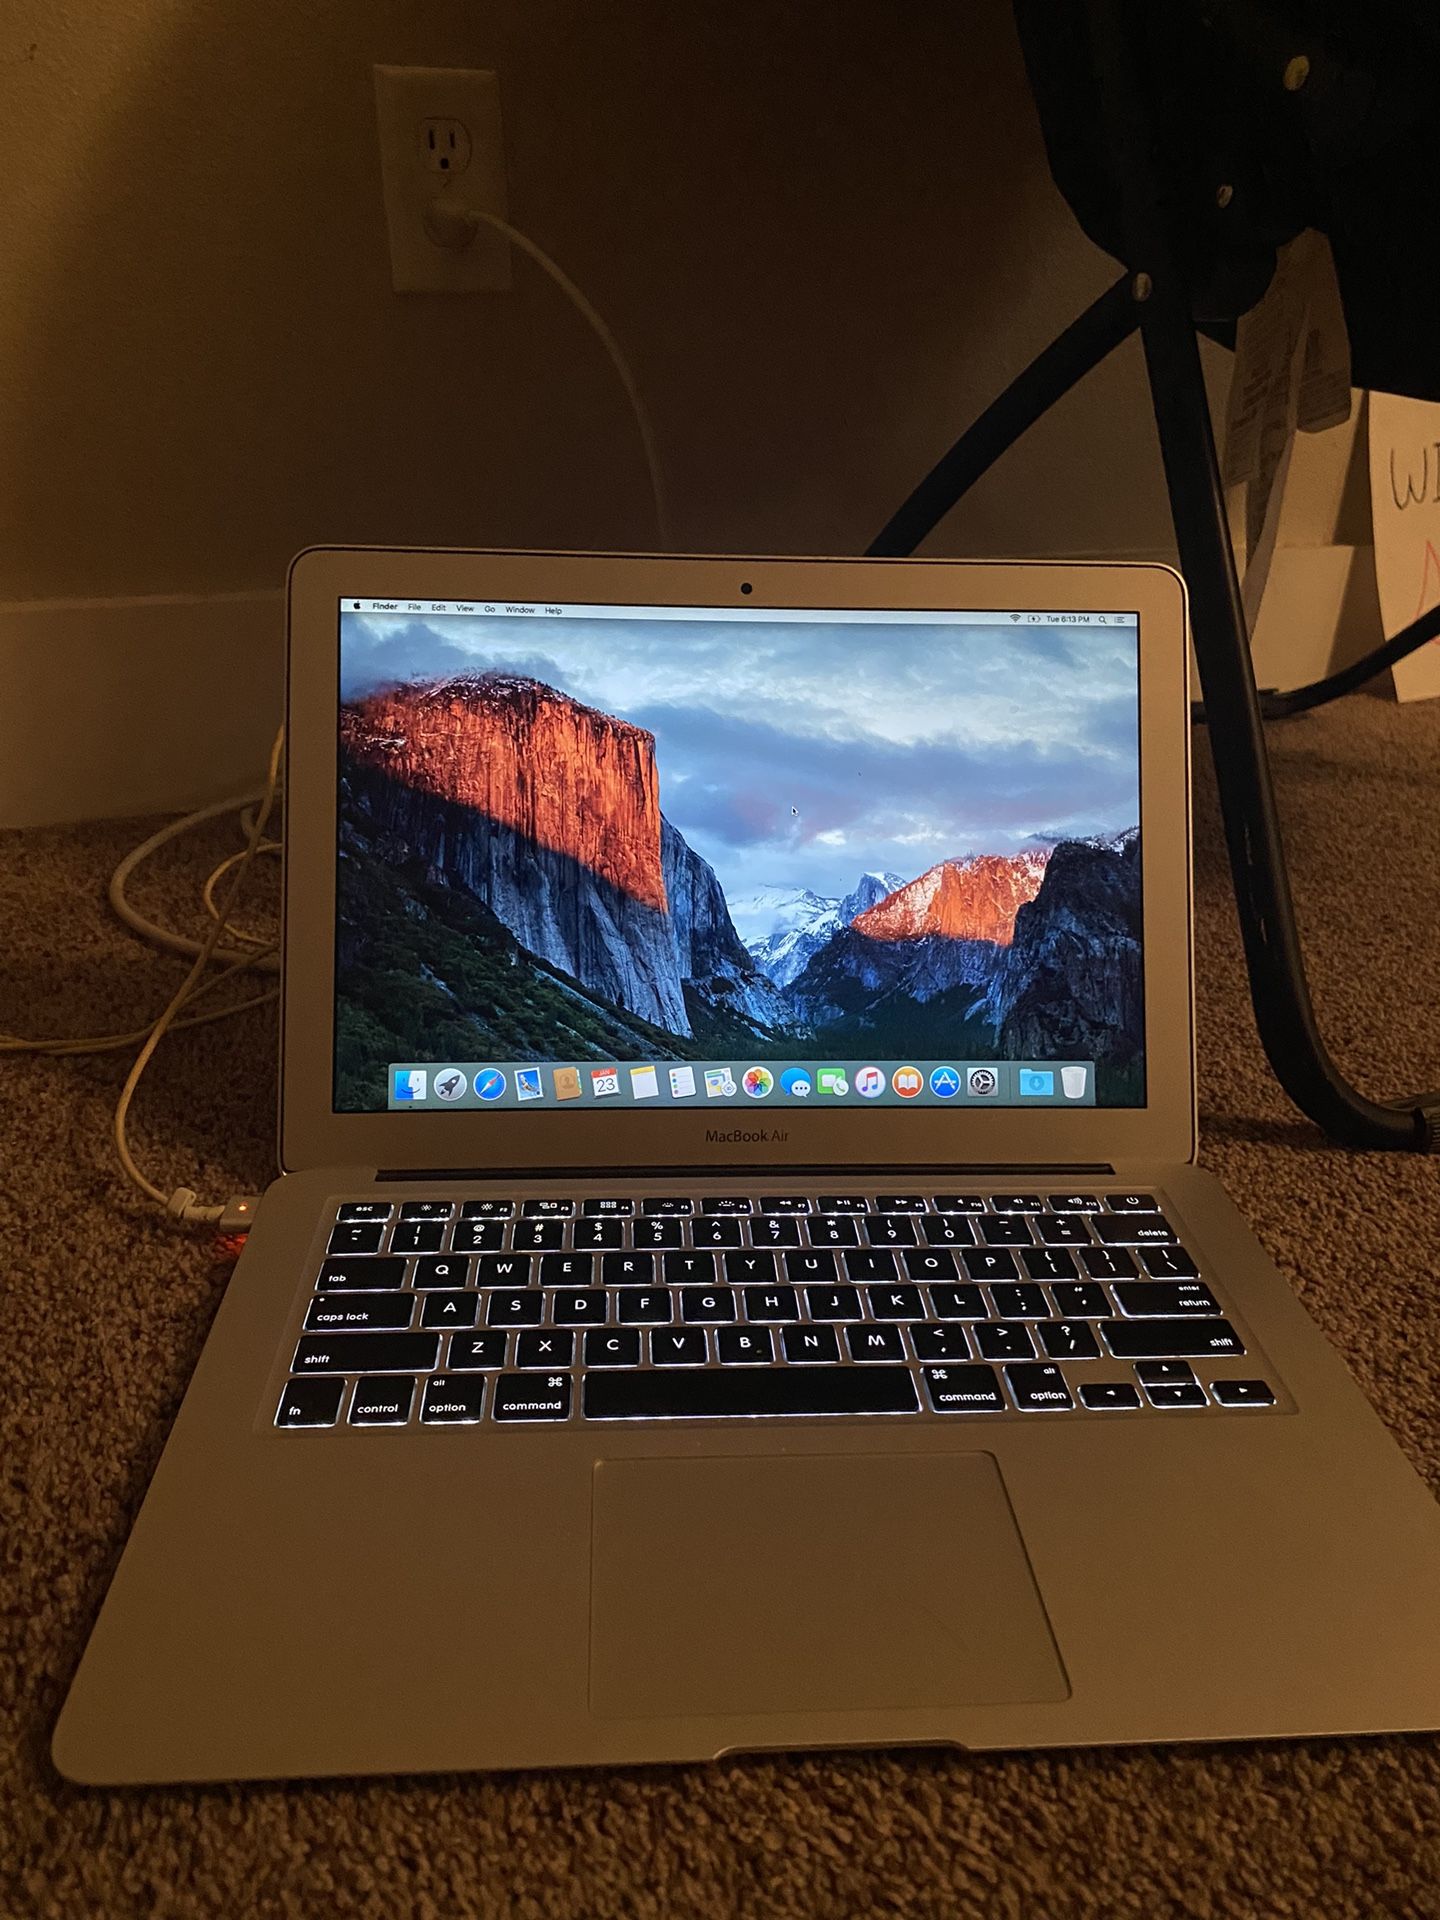 2013 Apple MacBook Air